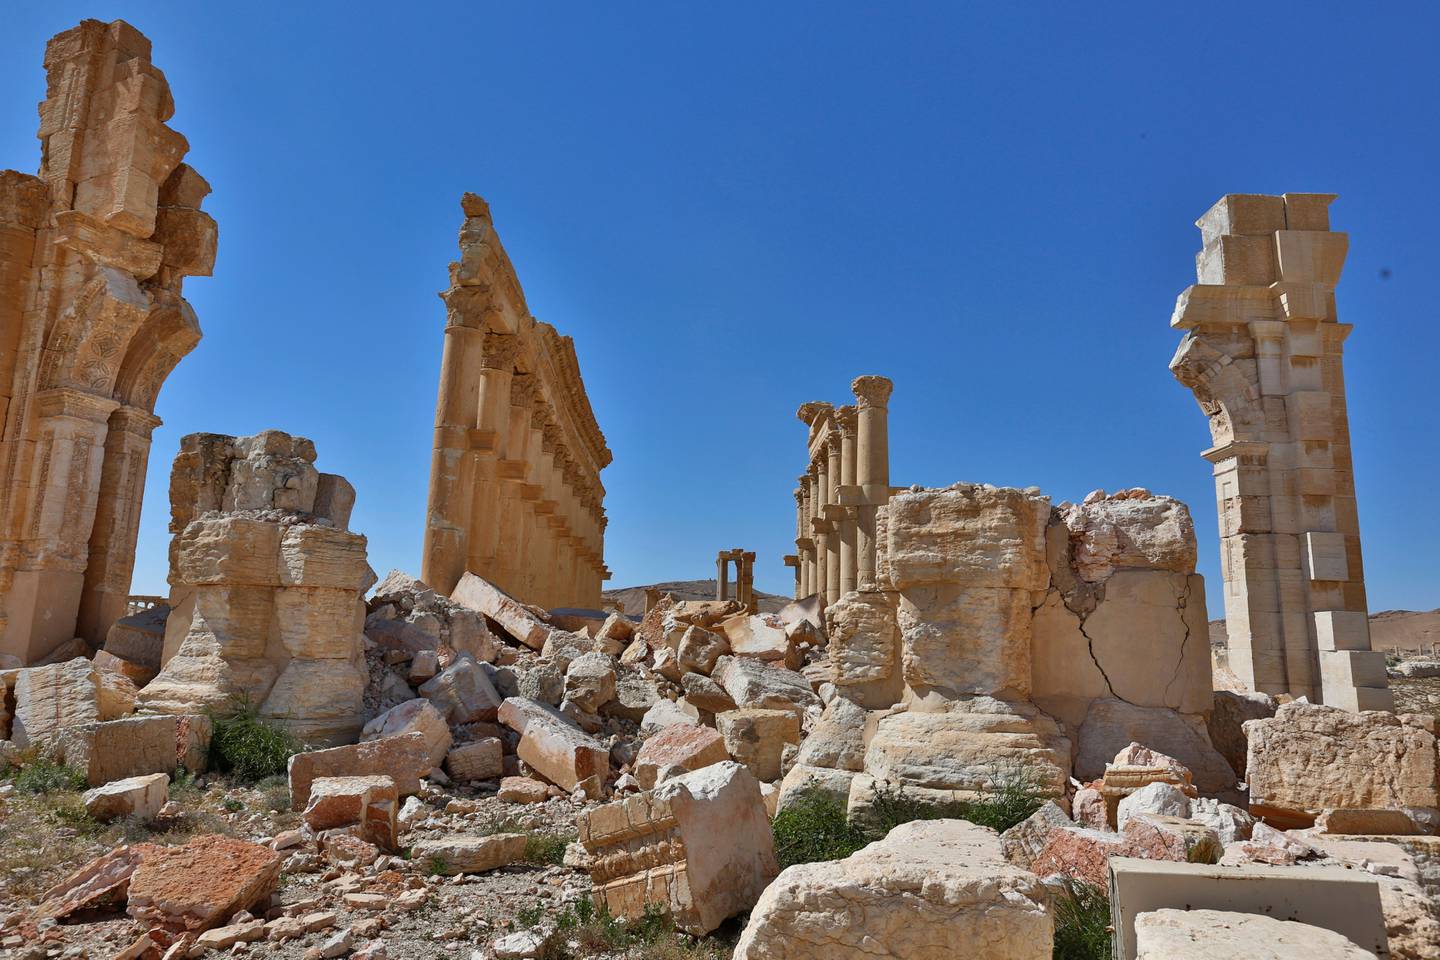 IS har plyndret og ødelagt kulturskatter i Syria, her fra Palmyra, som er en av de gamle kulturbyene som har vært utsatt for ødeleggelsene. Foto: AP/NTB scanpix